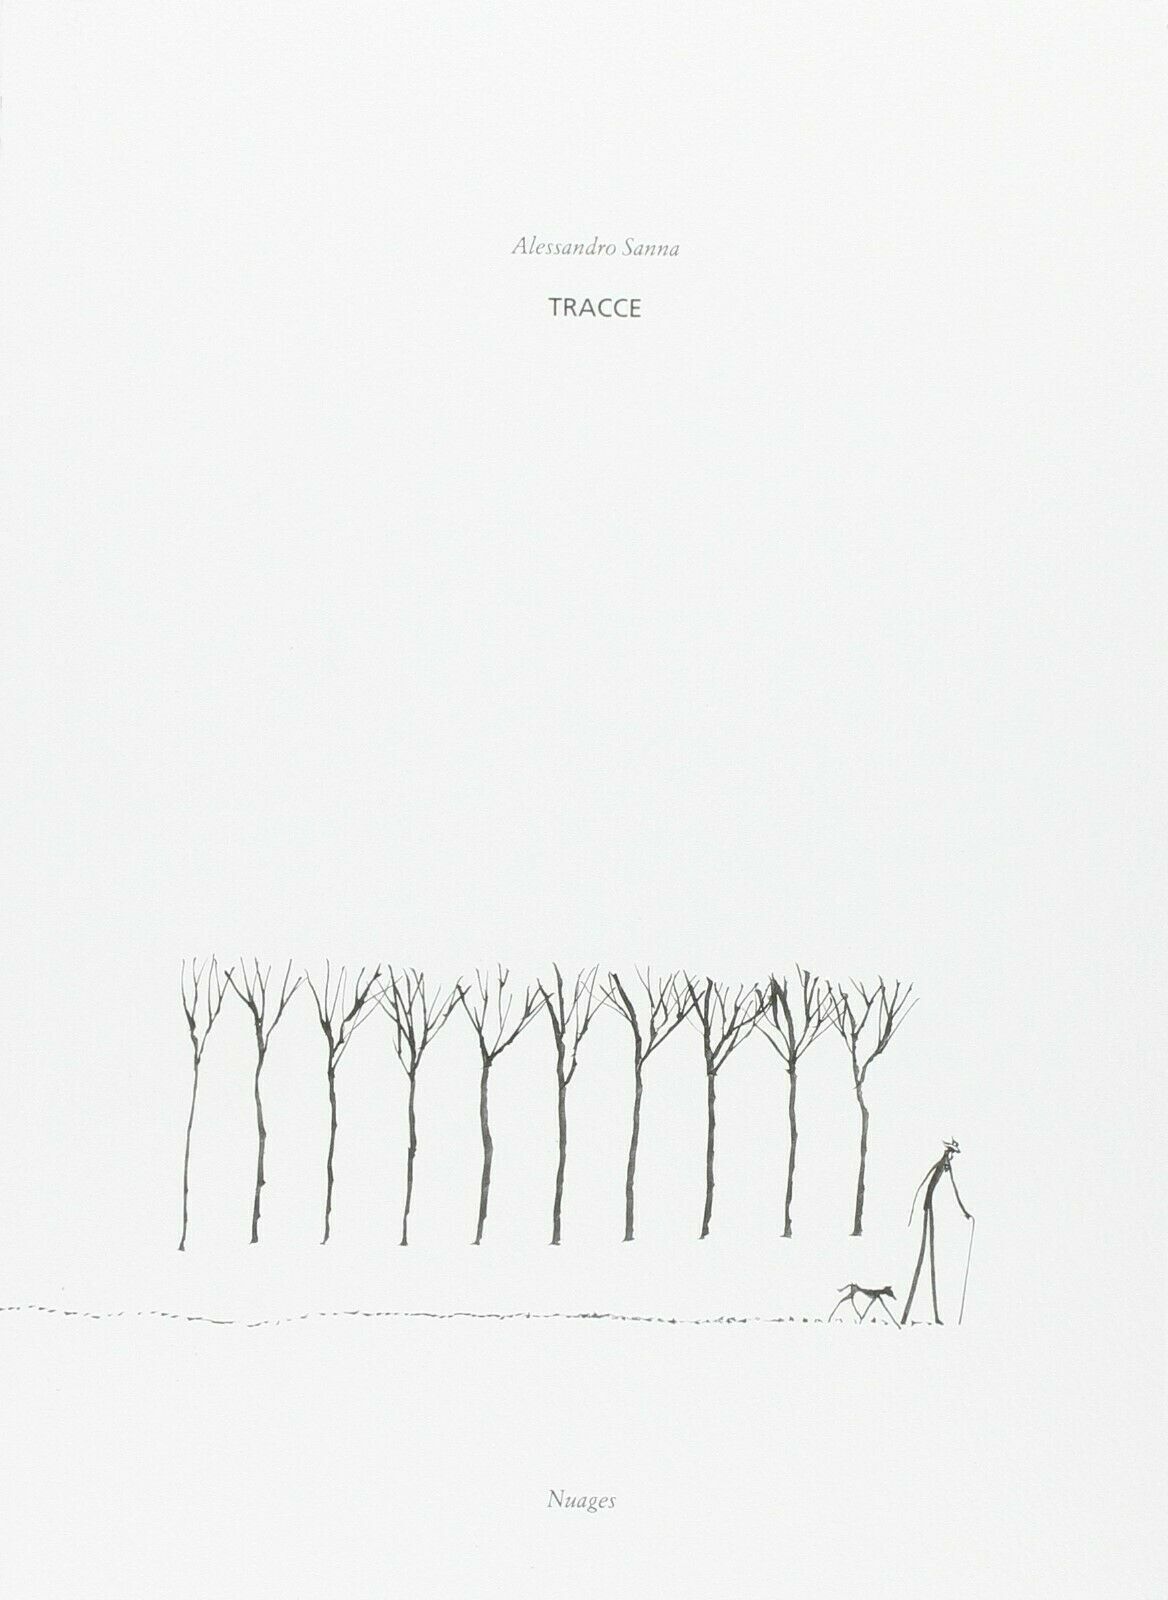 Tracce di Alessandro Sanna,  2010,  Nuages